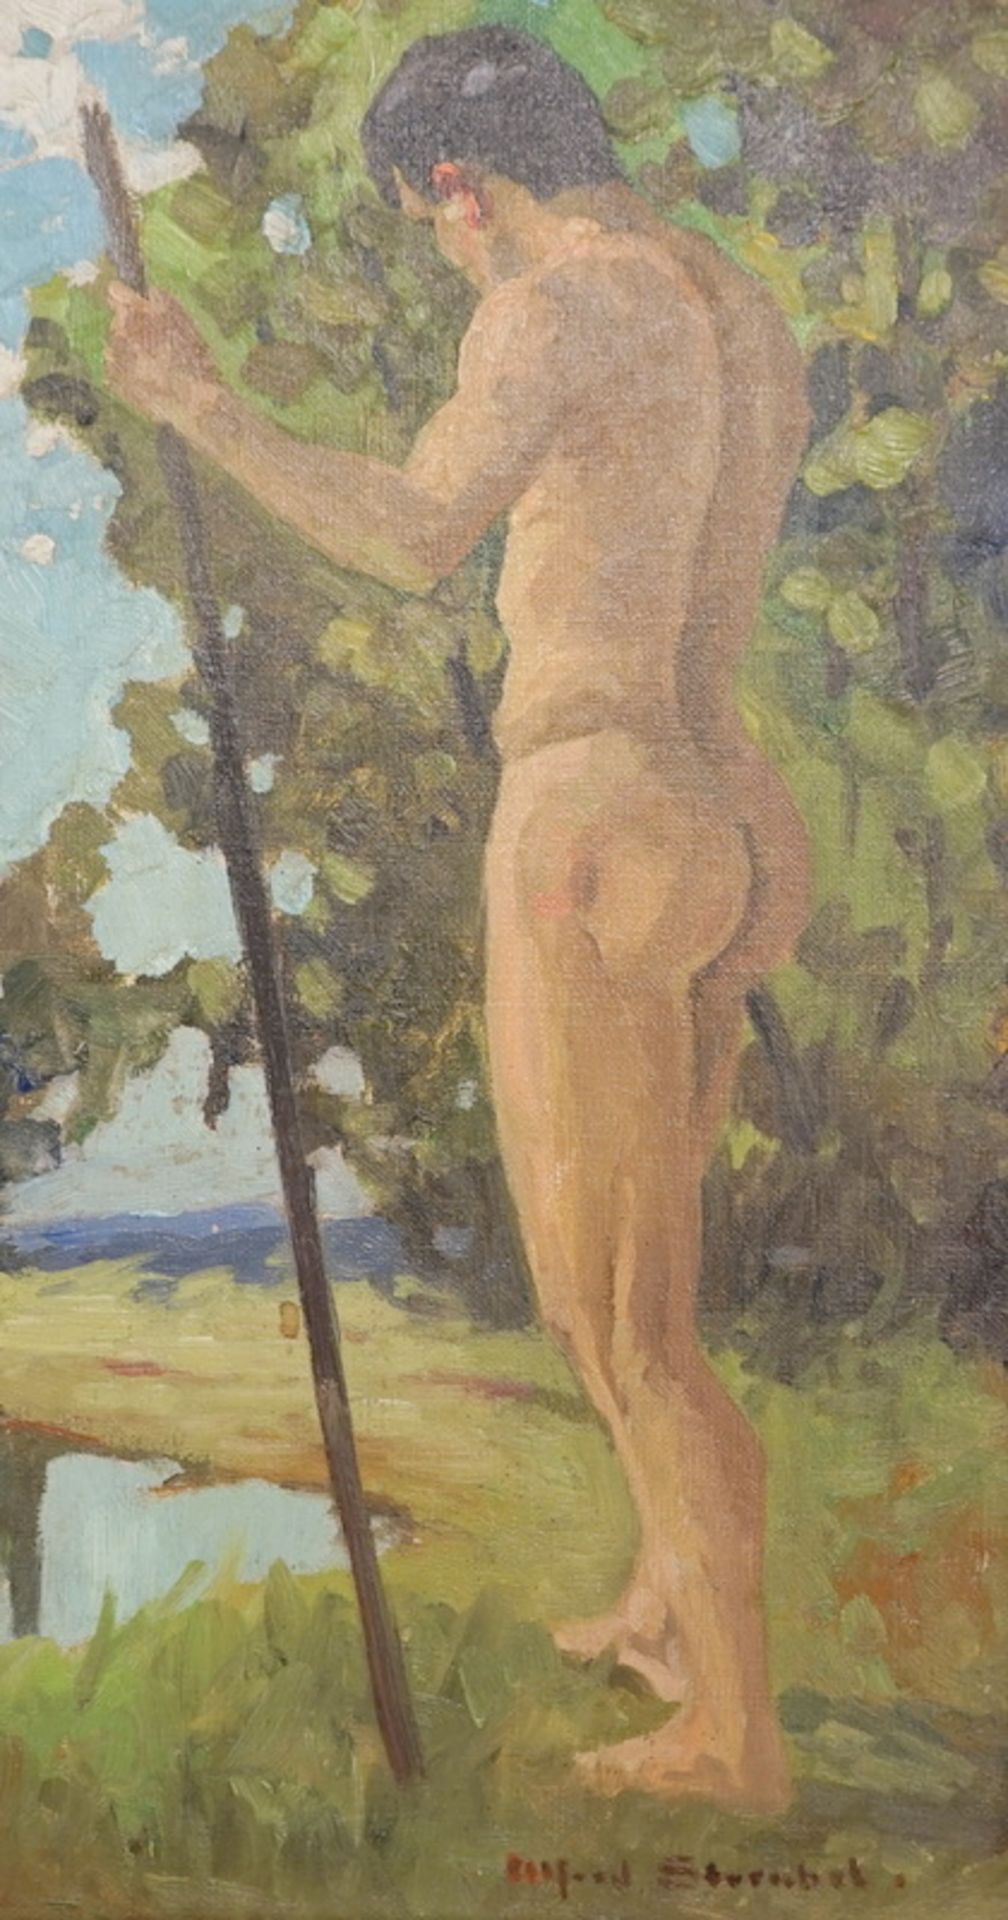 Streubel, Alfred (1861-1947): Männlicher Akt mit Spazierstock,Öl auf Leinwand, signiert unten rechts